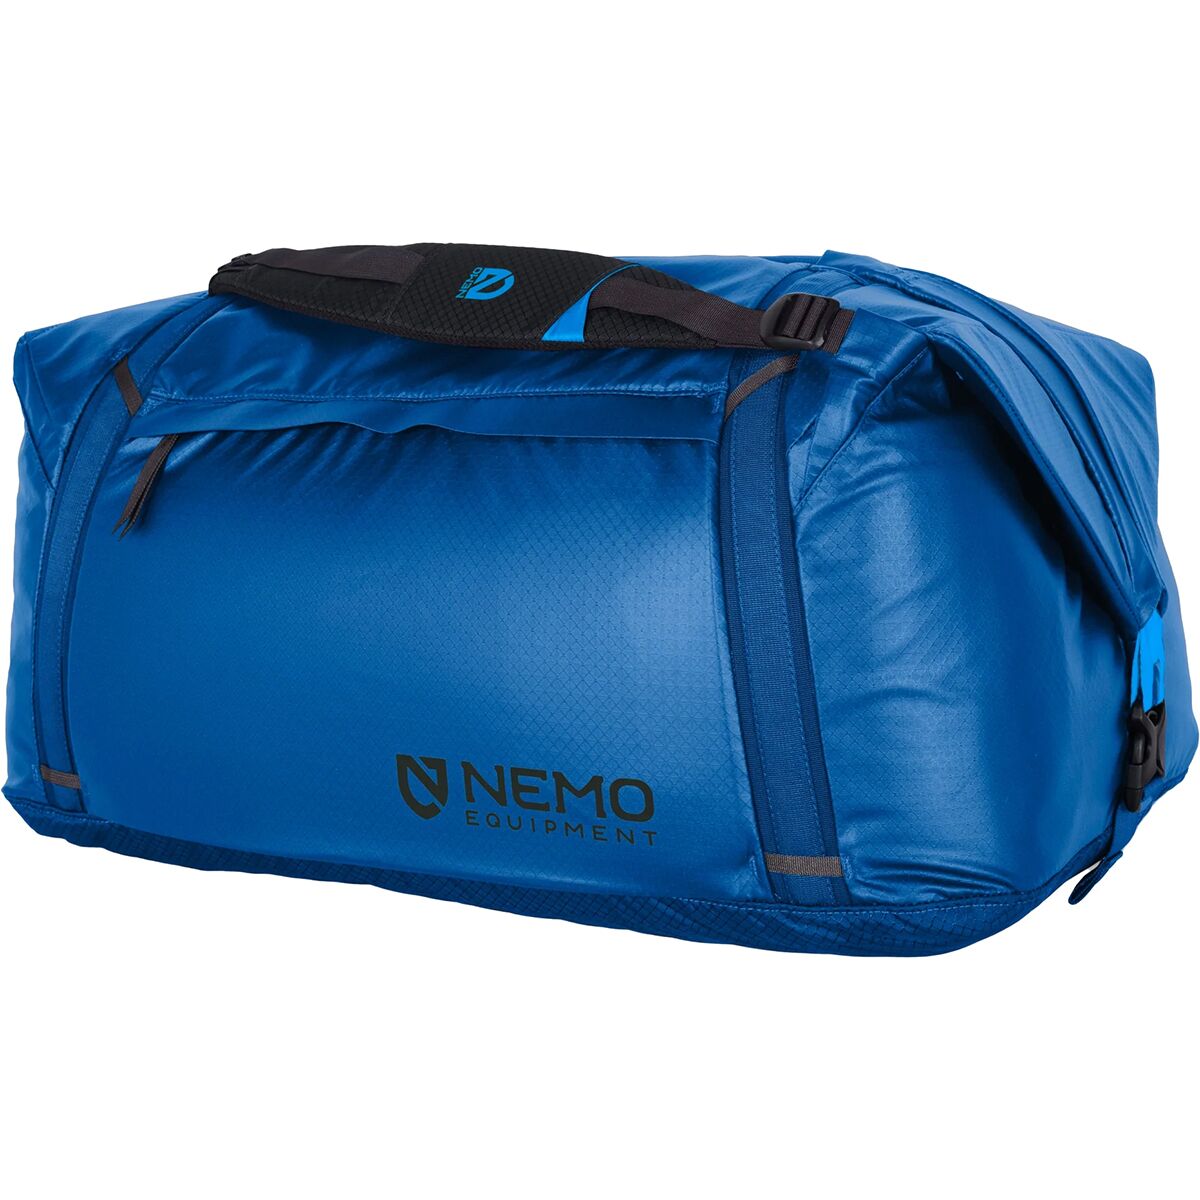 Двойная трансформируемая спортивная сумка объемом 100 л Nemo Equipment Inc., цвет lake